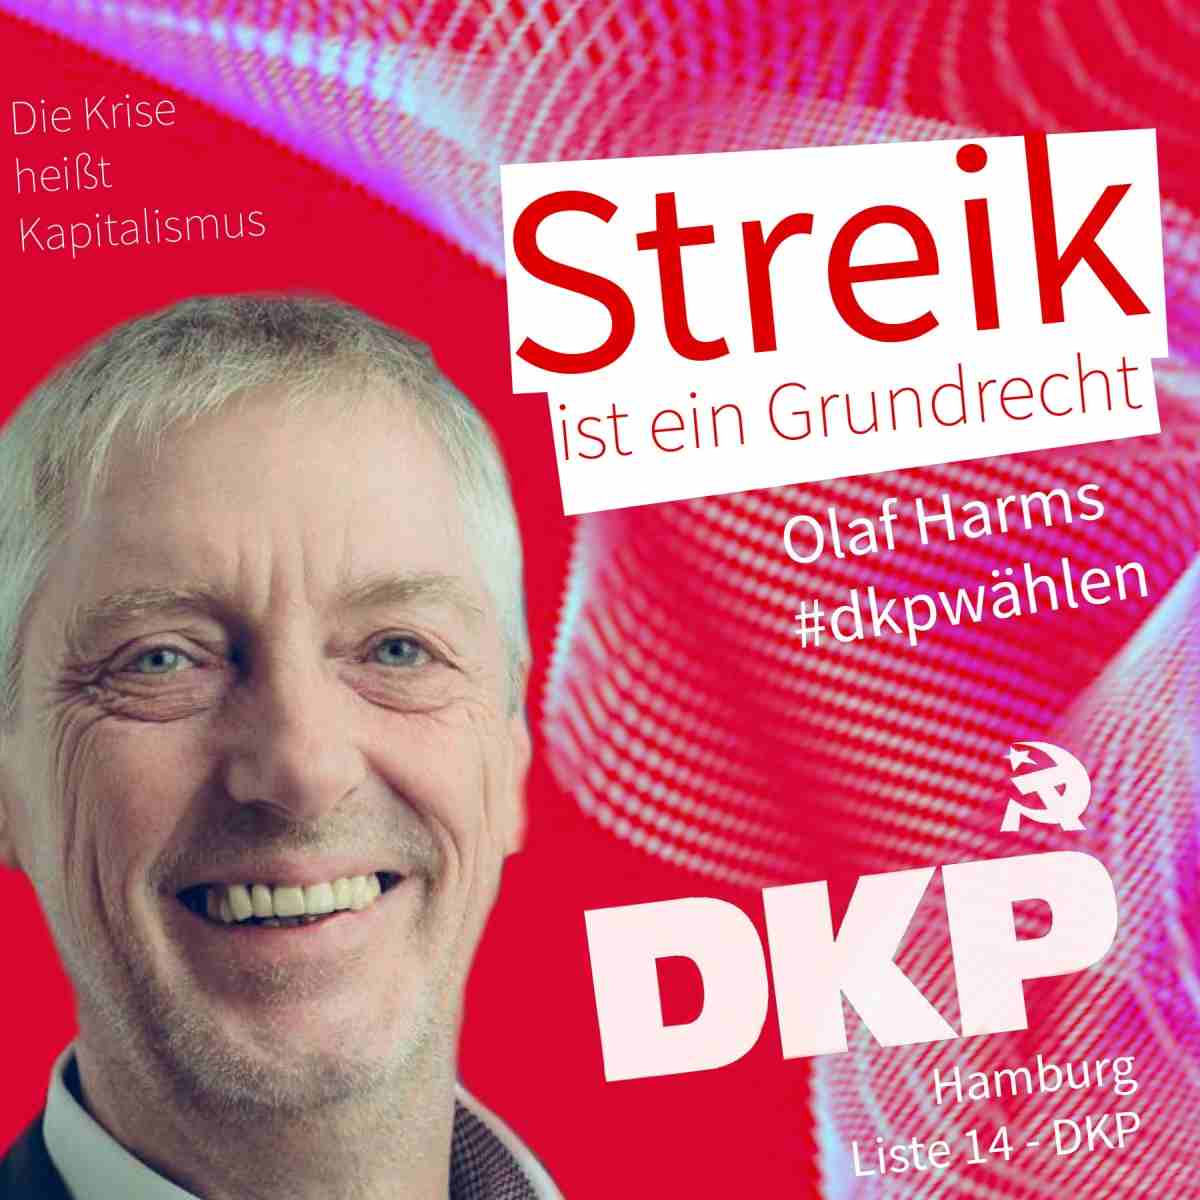 125137E4 67FF 4F08 A38A 625F227B2D6D - Zwölf gute Gründe, DKP zu wählen - Bundestagswahl, DKP - Hintergrund